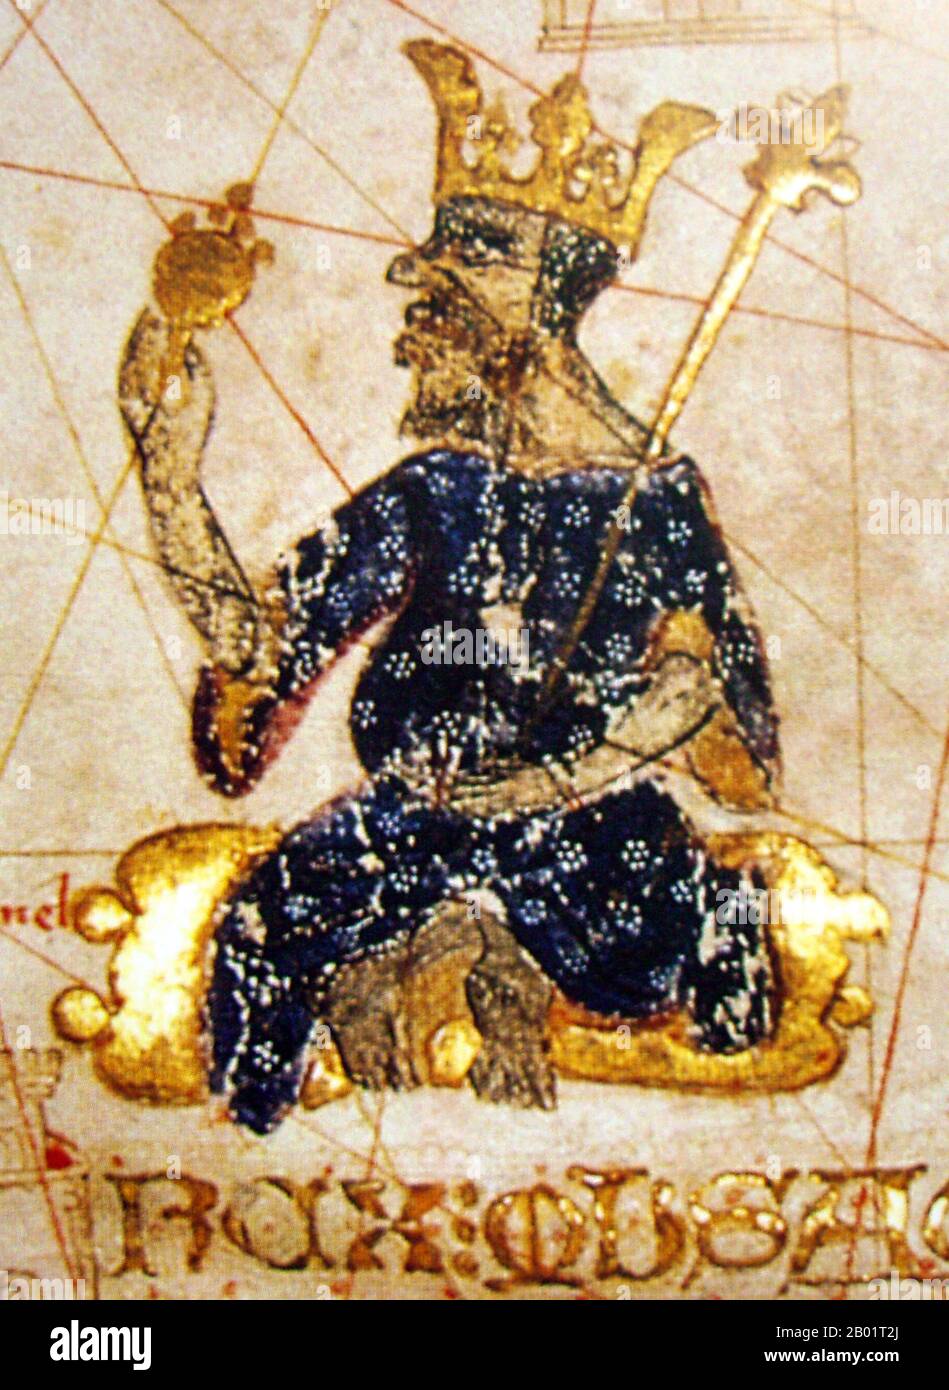 Mali : Mansa Musa (c. 1280-1337), roi du Mali, tenant un sceptre et une pièce d'or. Détail de l'Atlas catalan par Abraham Cresques, 1375. Moussa Ier, communément appelé Mansa Musa, était la dixième mansa, qui se traduit par « roi des rois » ou « empereur », de l'Empire malien. À l'époque de l'accession au trône de Mansa Musa, l'Empire malien se composait de territoires appartenant autrefois à l'Empire du Ghana et à Melle (Mali) et de zones environnantes immédiates. Musa détient de nombreux titres, dont celui d'émir de Melle, seigneur des Mines de Wangara, et conquérant de Ghanata, de Futa-Jallon et d'une douzaine d'autres États. Banque D'Images